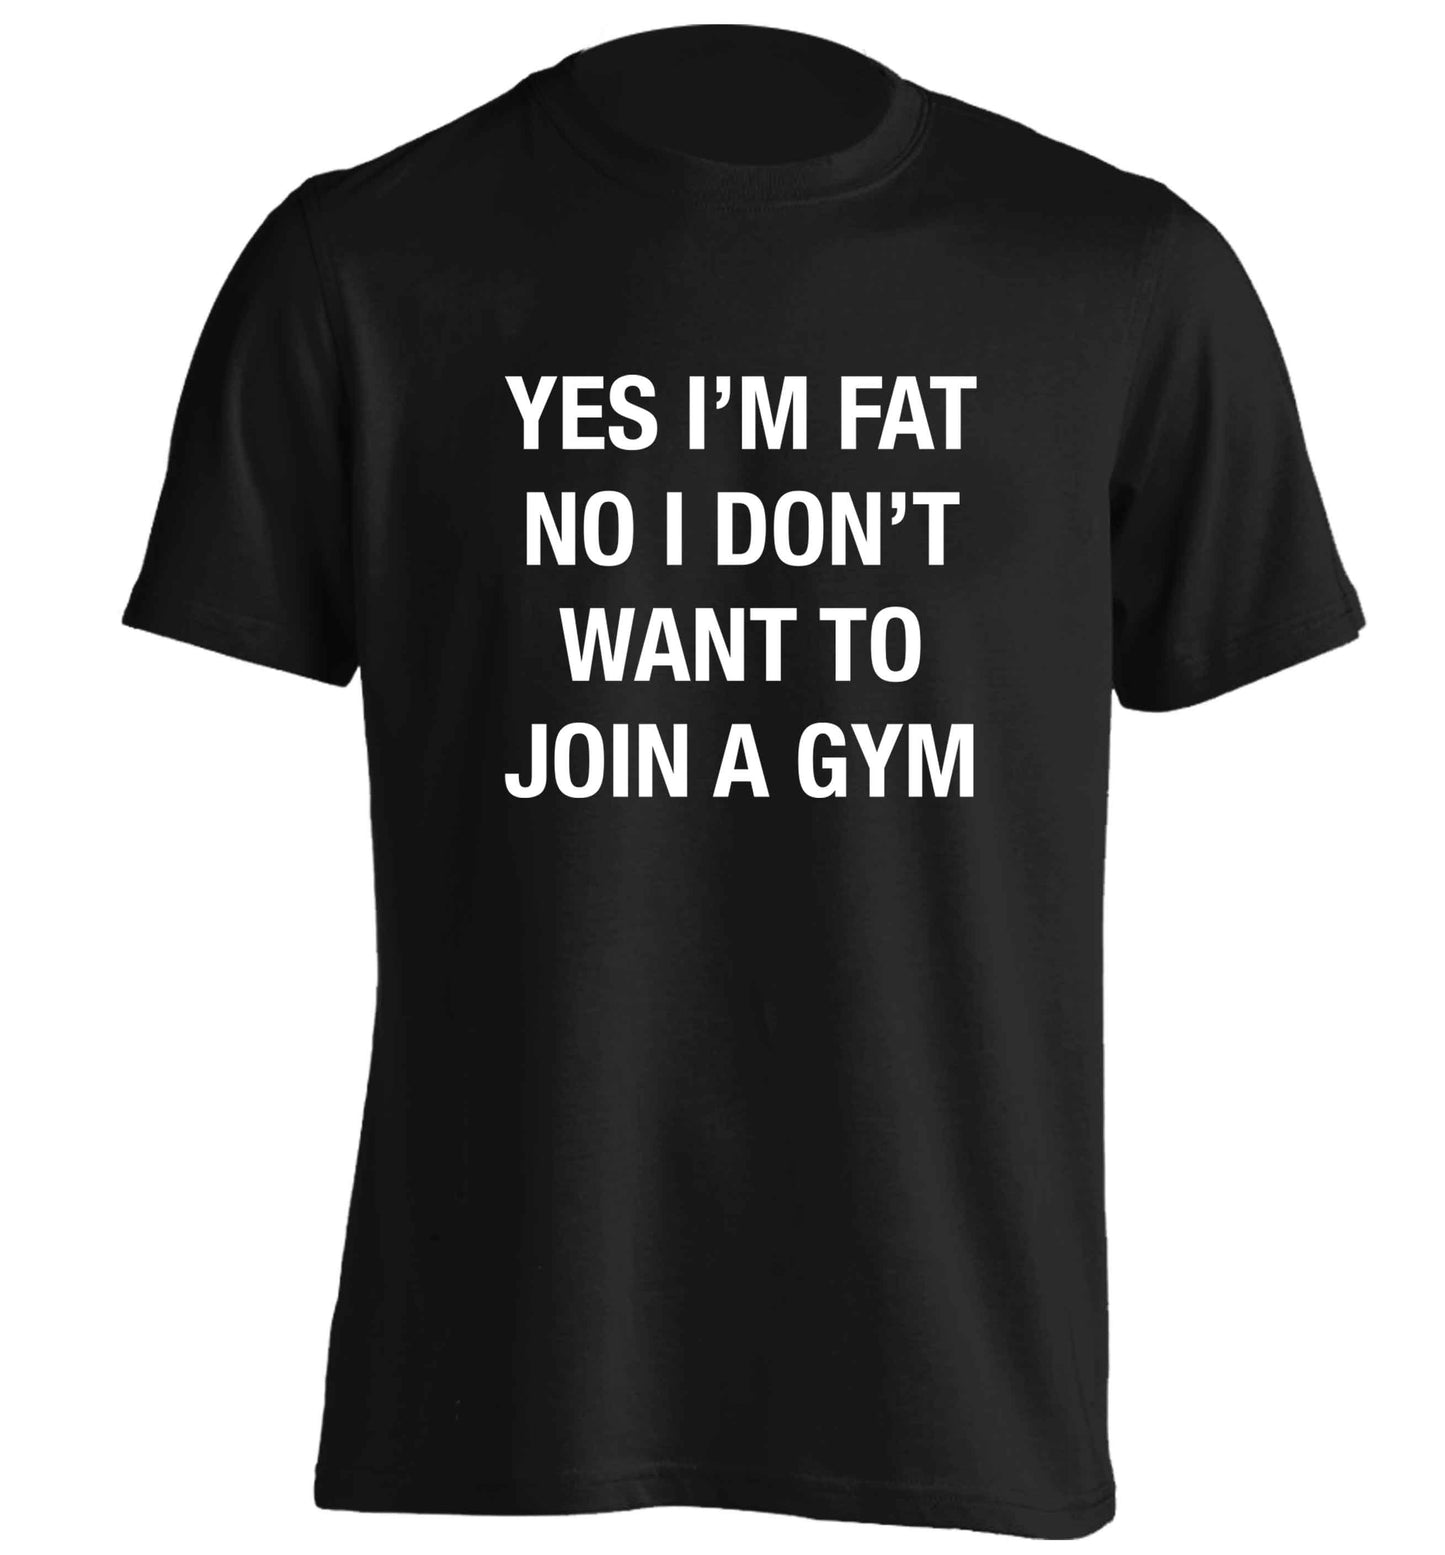 Yes I'm fat, no I don't want to go to the gym adults unisex black Tshirt 2XL